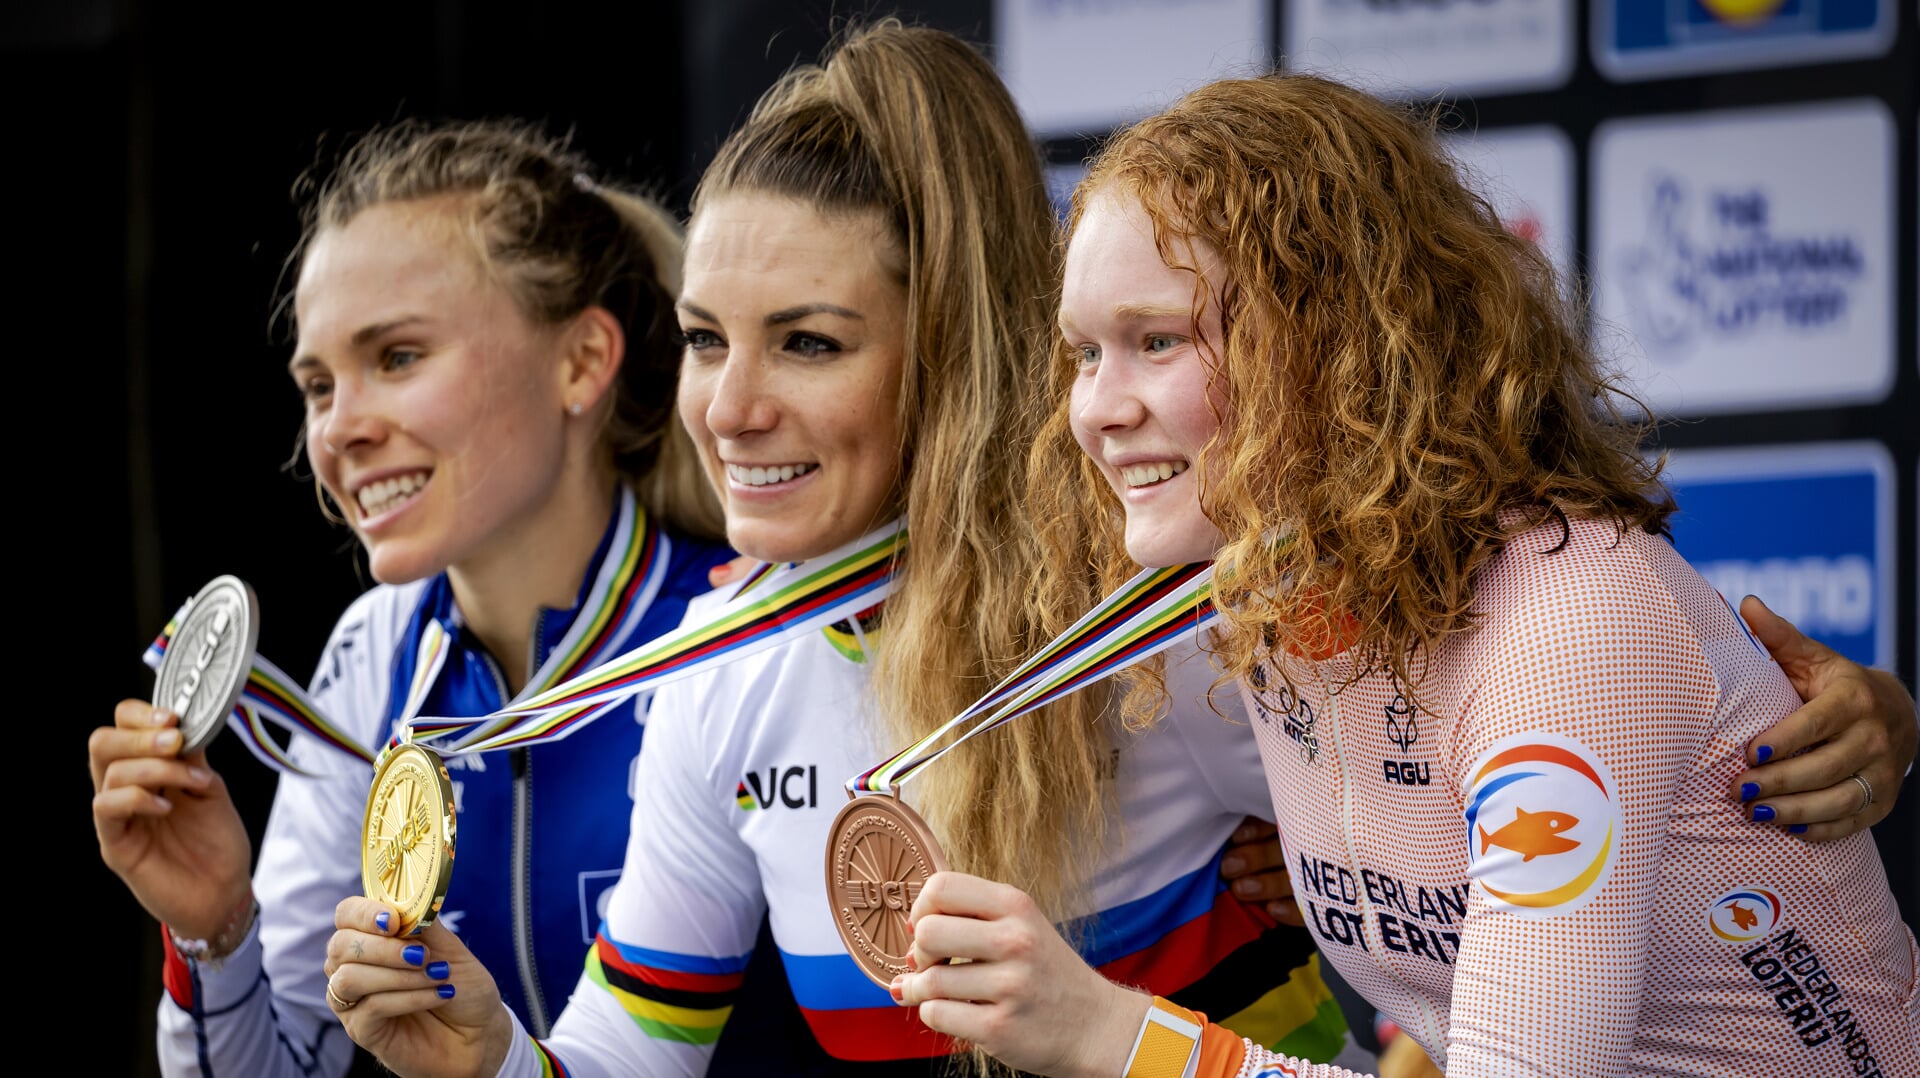 Puck Pieterse (r) met haar bronzen medaille op het onderdeel cross-country mountainbike tijdens de wereldkampioenschappen wielrennen. De Schotse stad en omgeving is van 3 tot en met 13 augustus het toneel van een wereldkampioenschap met meerdere fiets disciplines. ANP ROBIN VAN LONKHUIJSEN